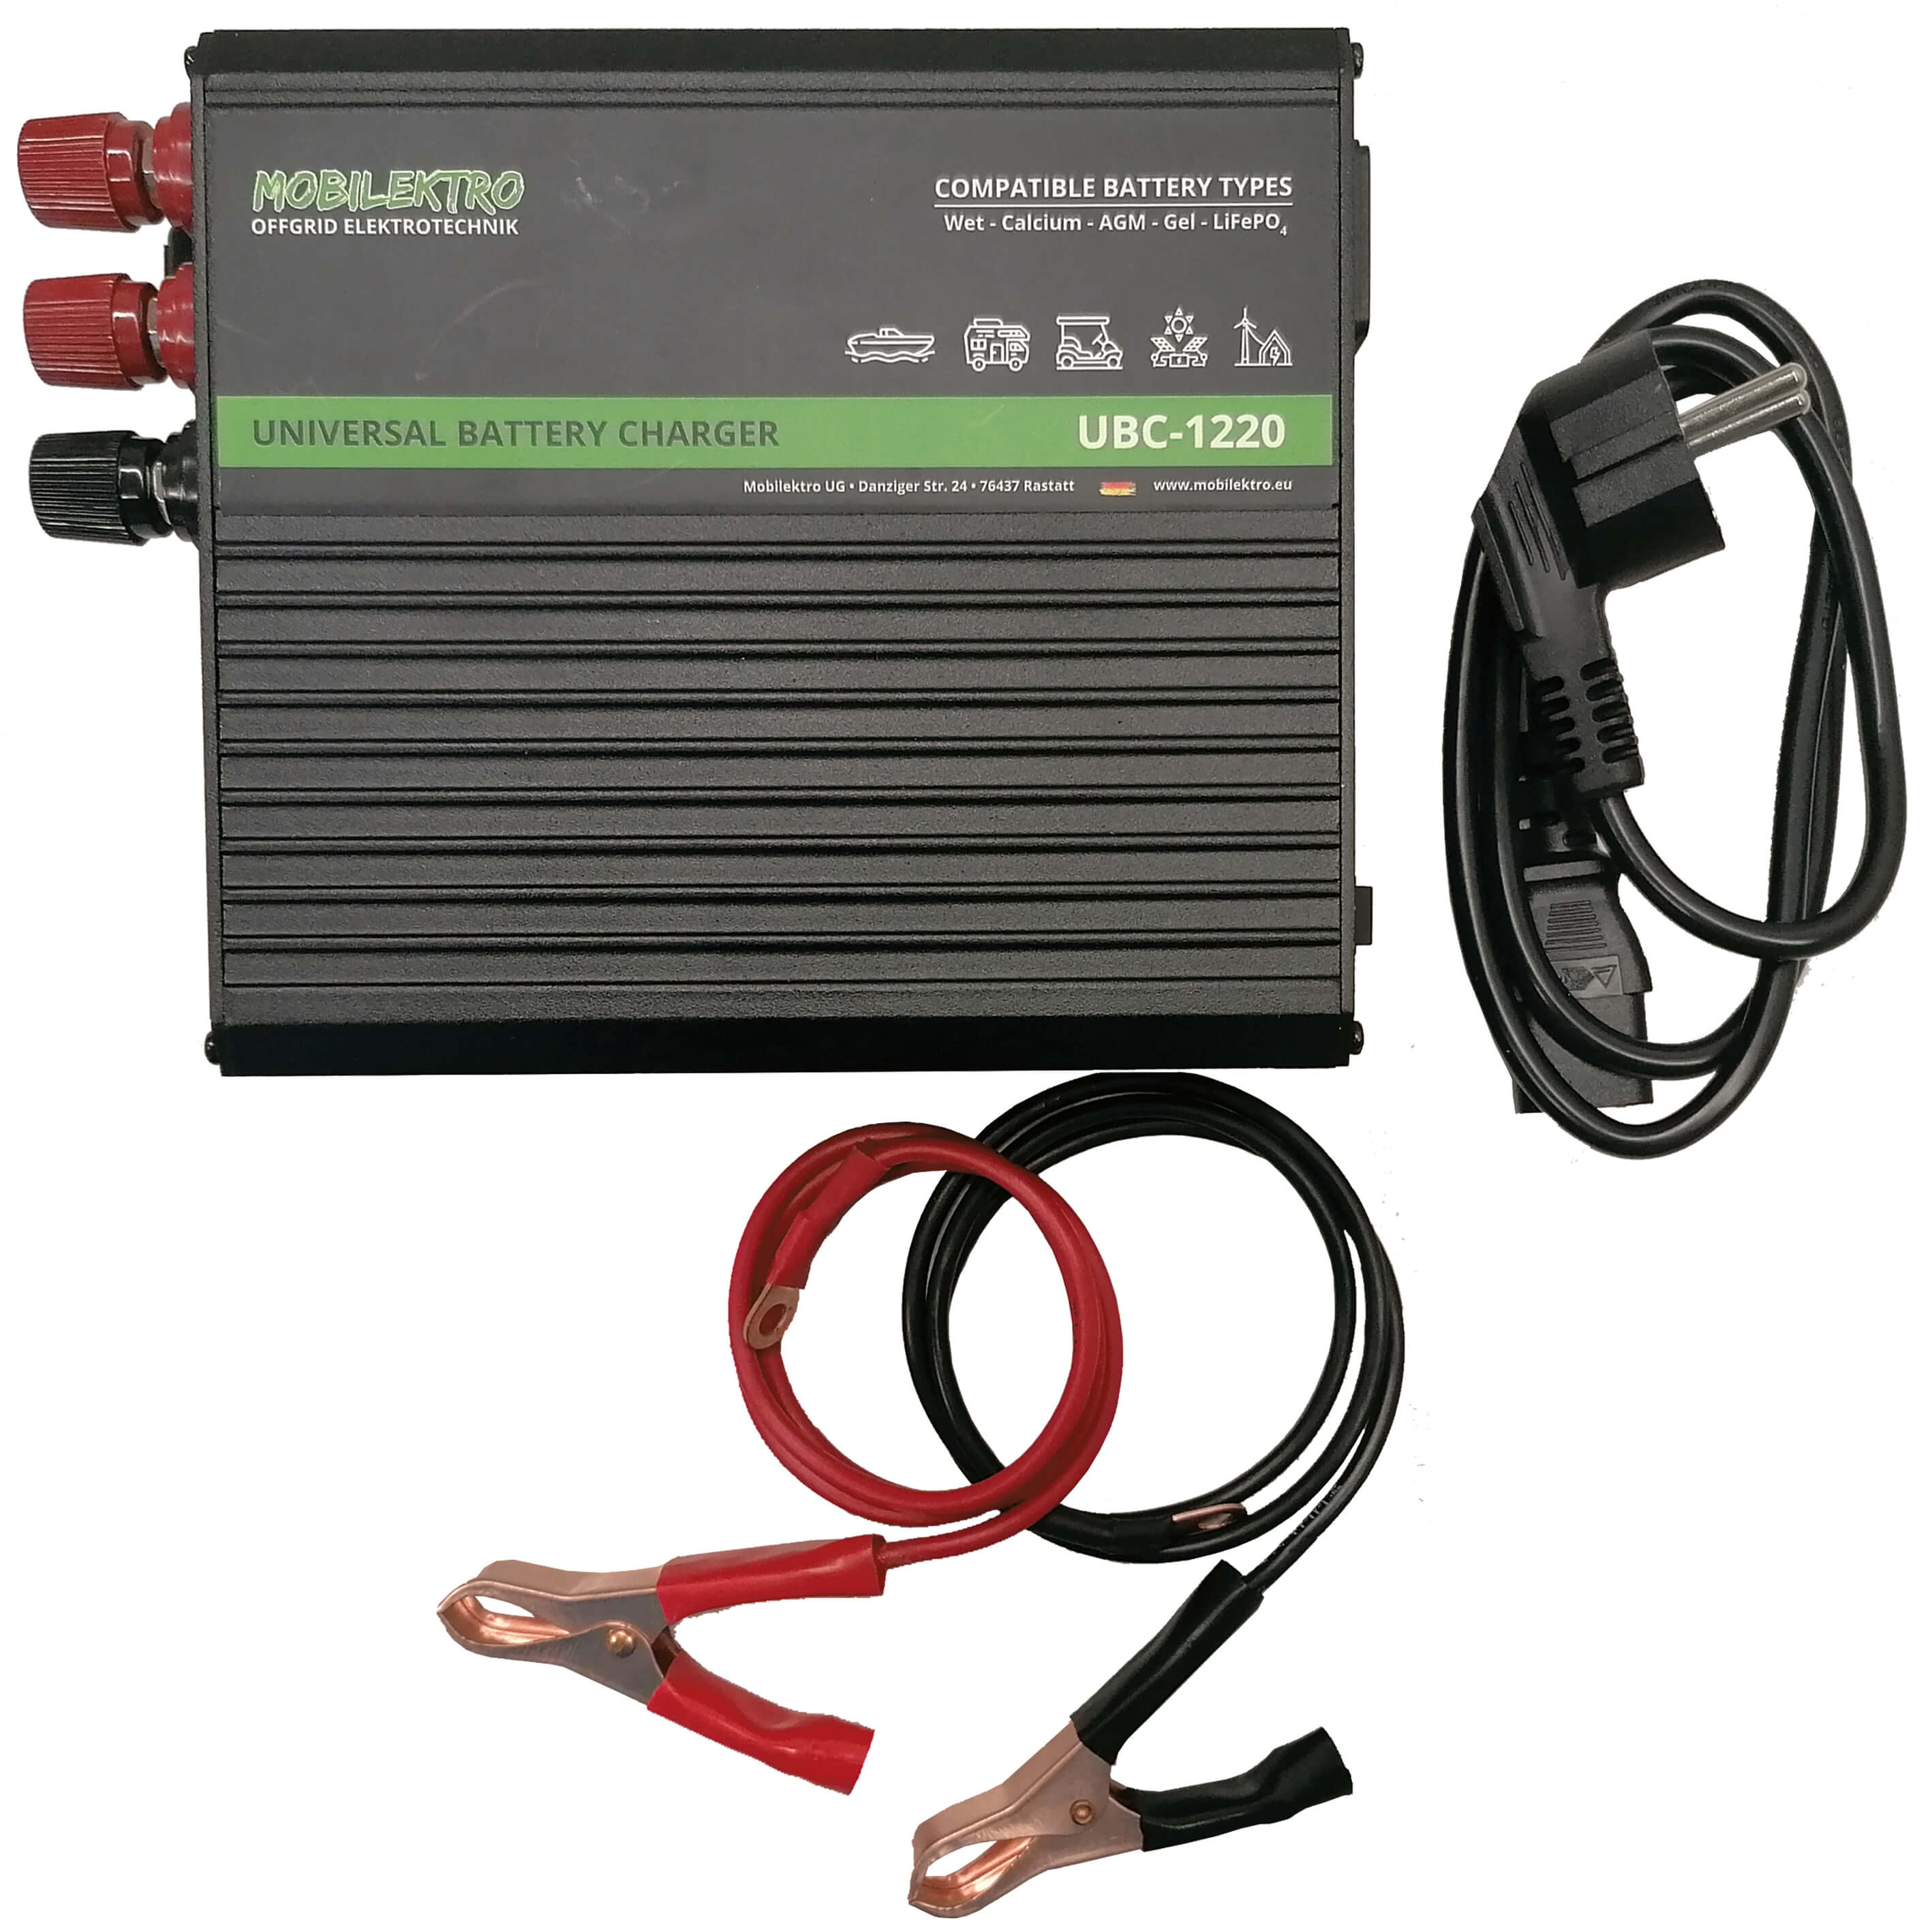 DINO KRAFTPAKET 136302 Automatikladegerät, Batterie Ladungsausgleicher,  Kfz-Ladegerät 10 A, 5 A, 2A 5 A, 2A